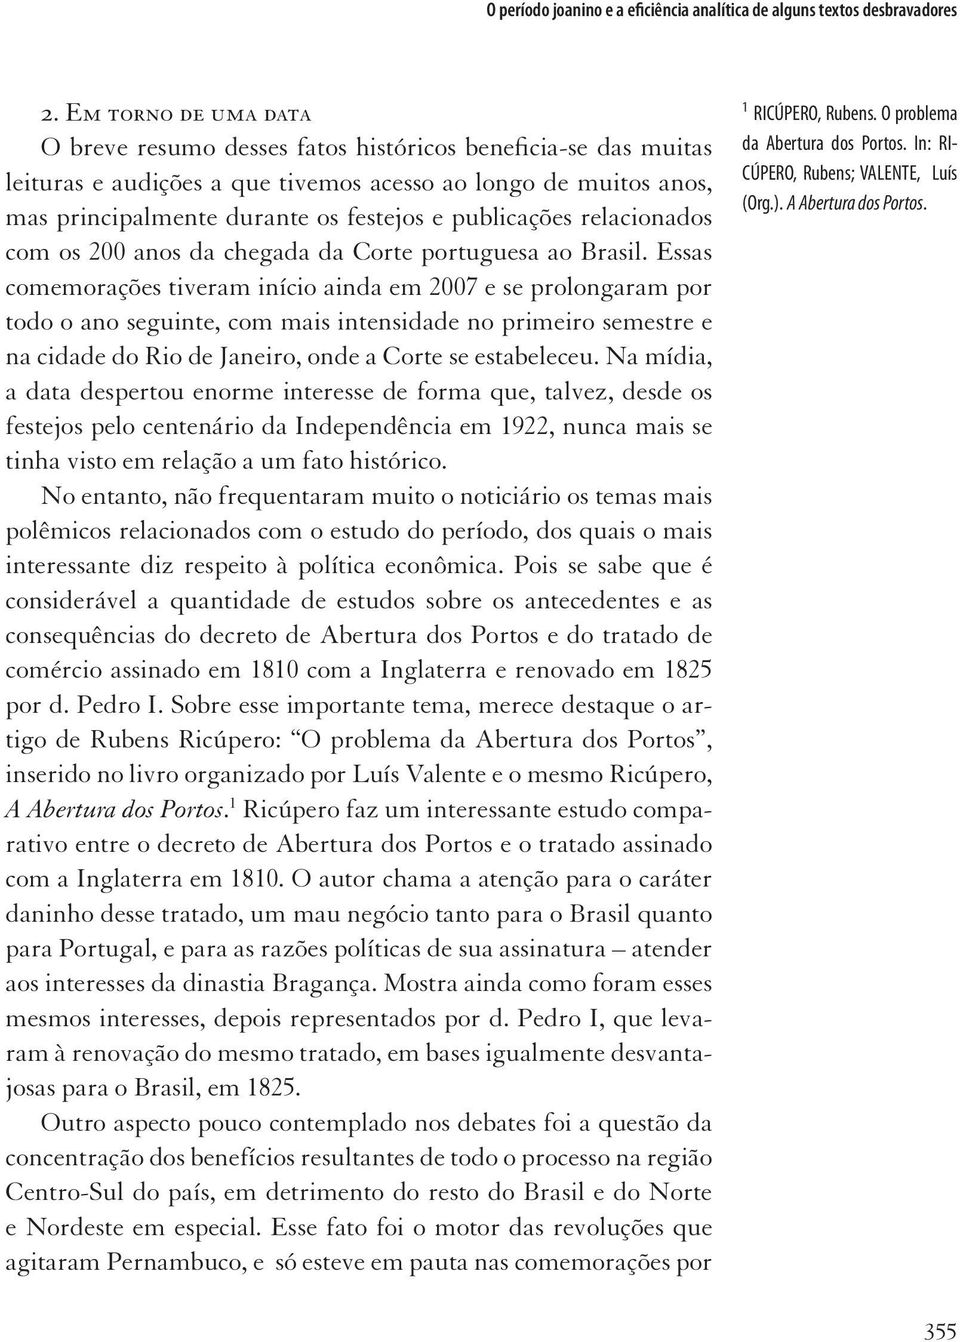 publicações relacionados com os 200 anos da chegada da Corte portuguesa ao Brasil.